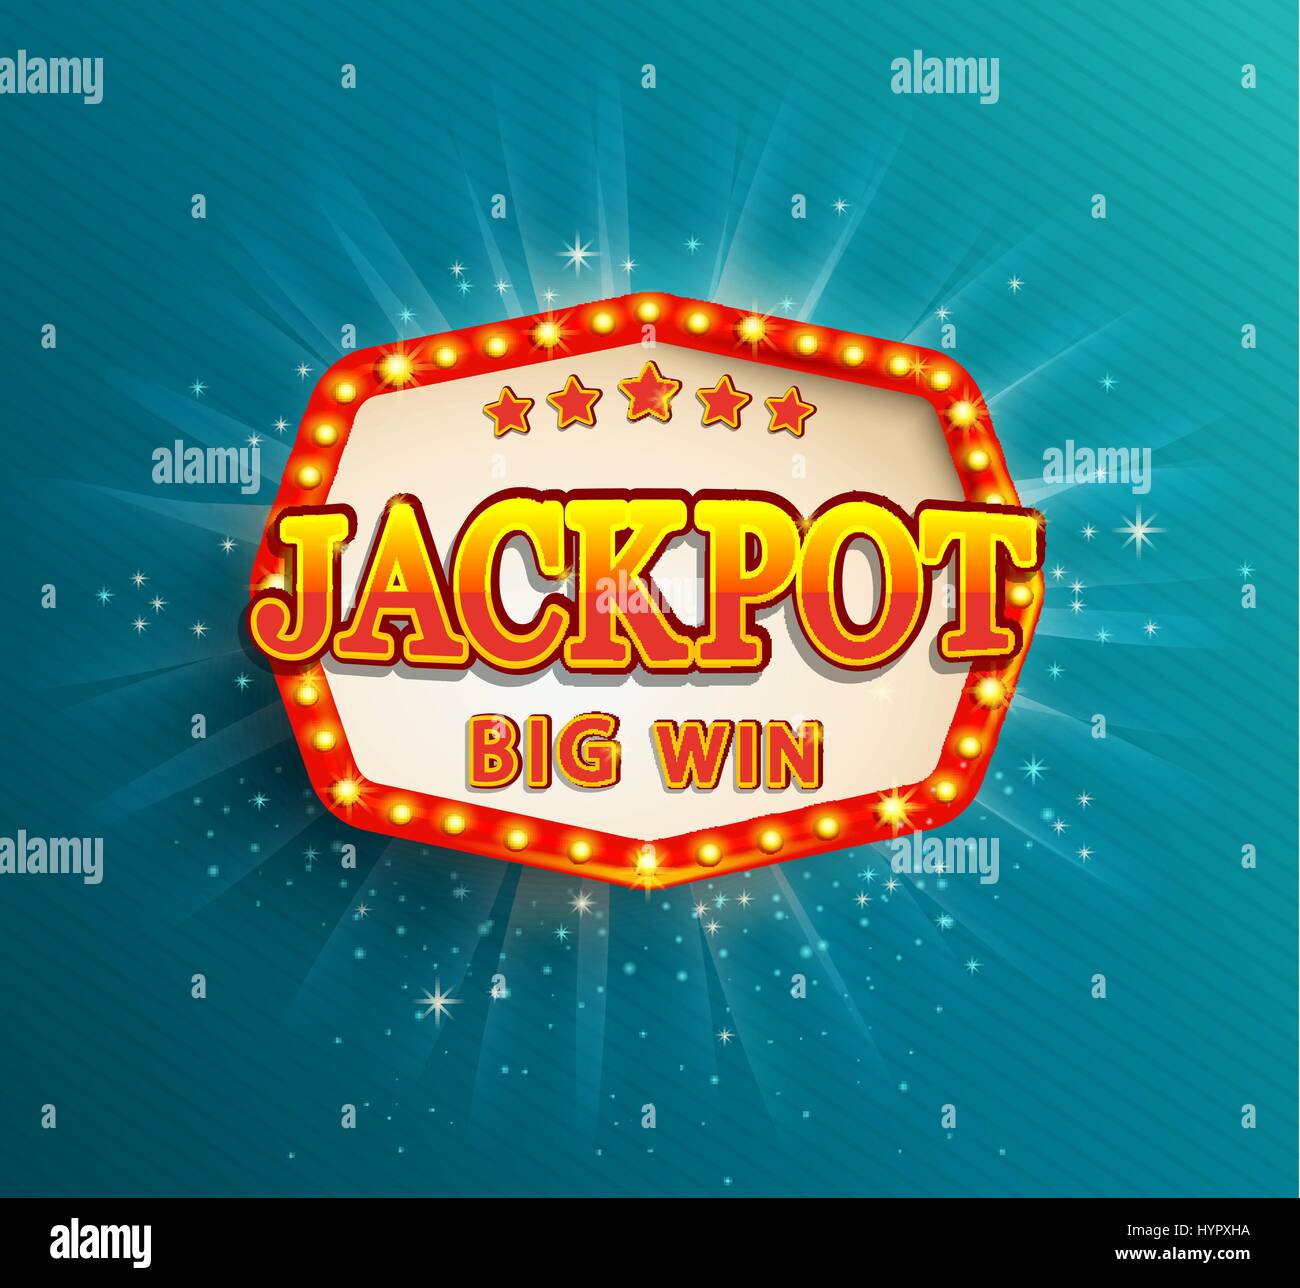 Jackpot lighting banner. Symbol of Big Win. Stock Vector